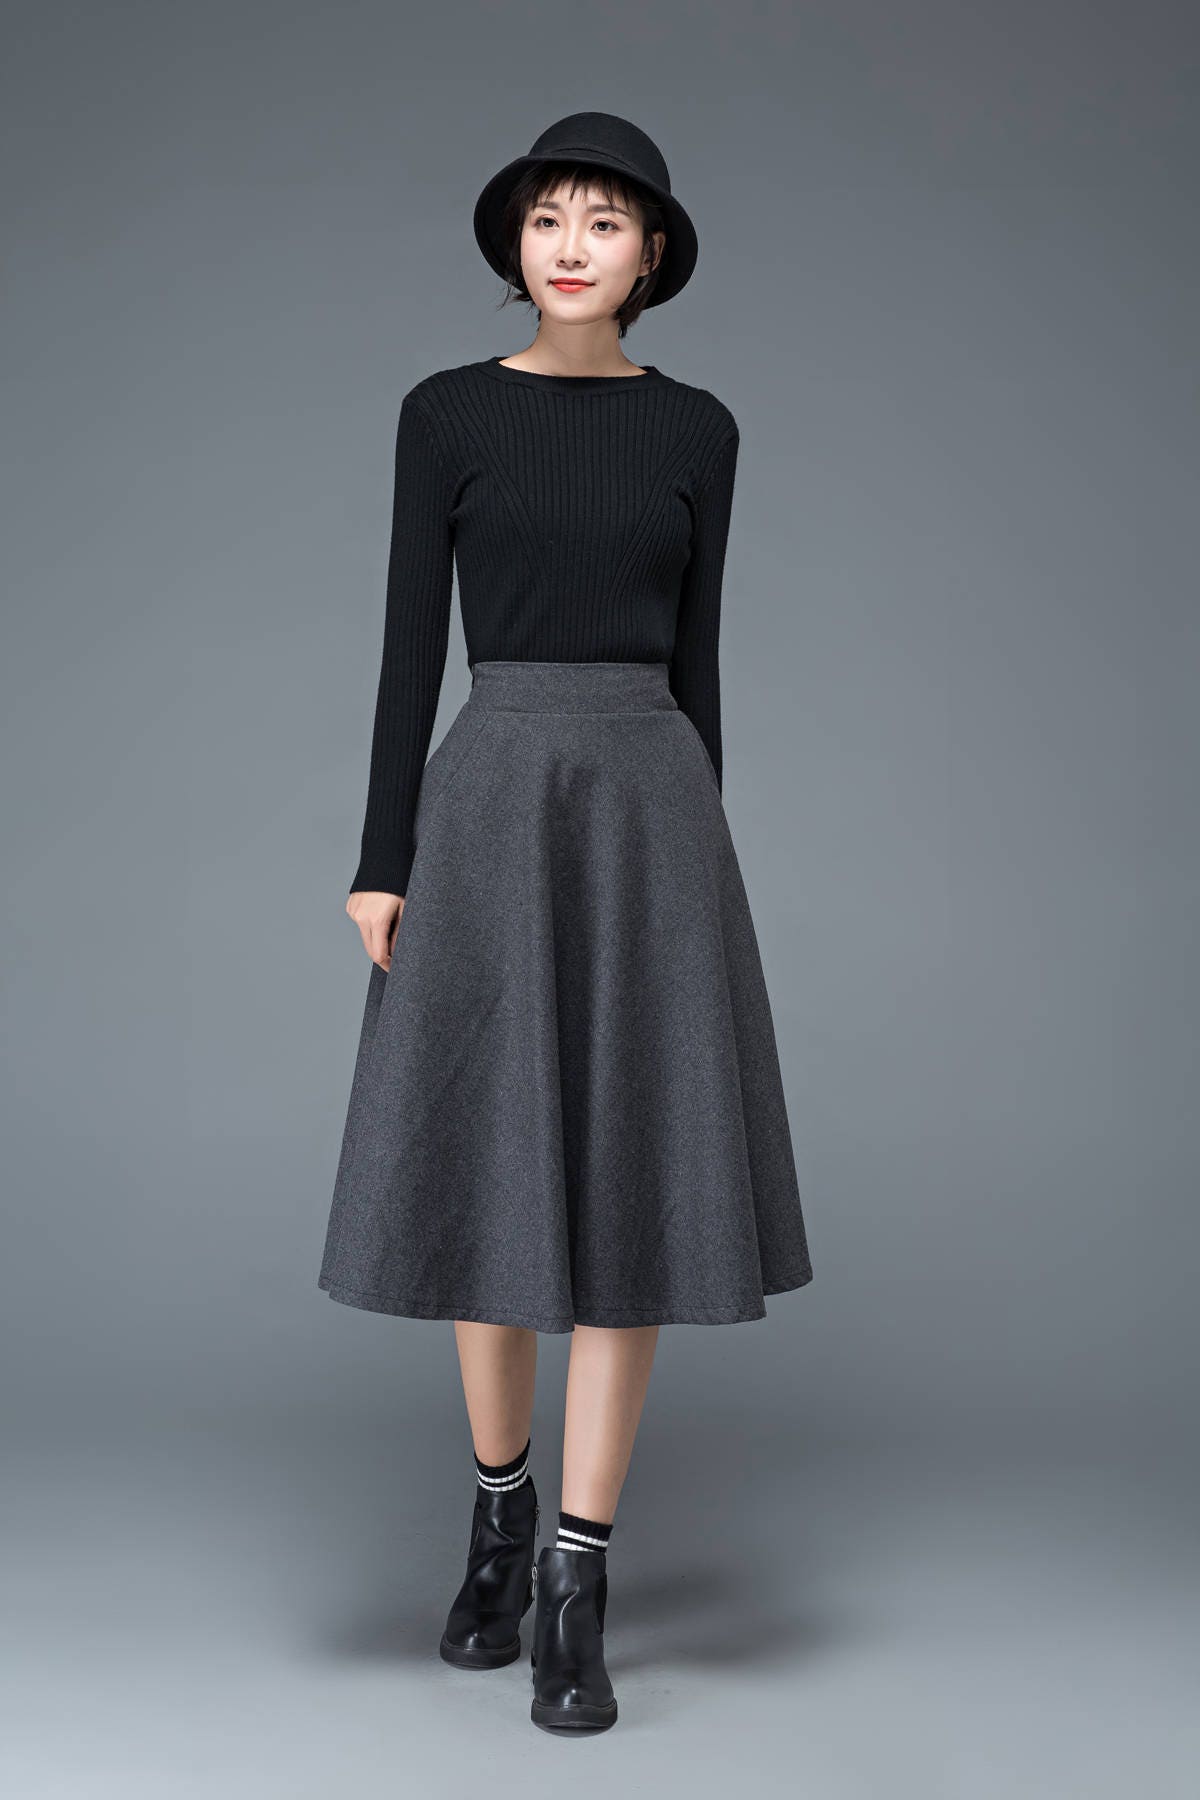 Gray wool skirt wool skirt midi skirt flare skirt dark | Etsy